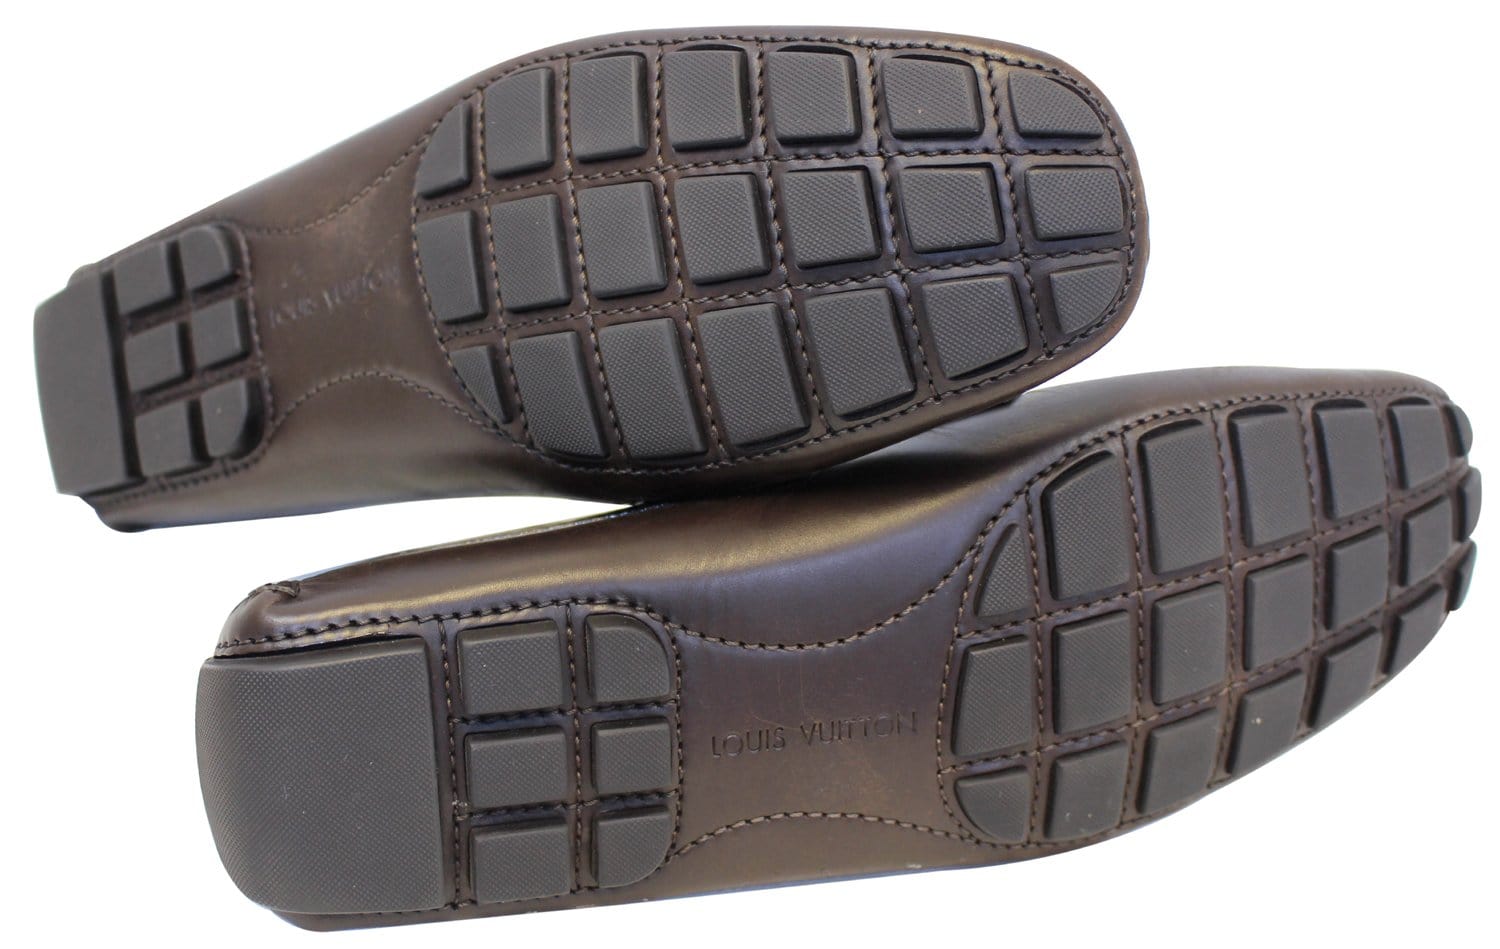 Gender: Unisex Louis Vuitton Men Shoes, Material: Leather